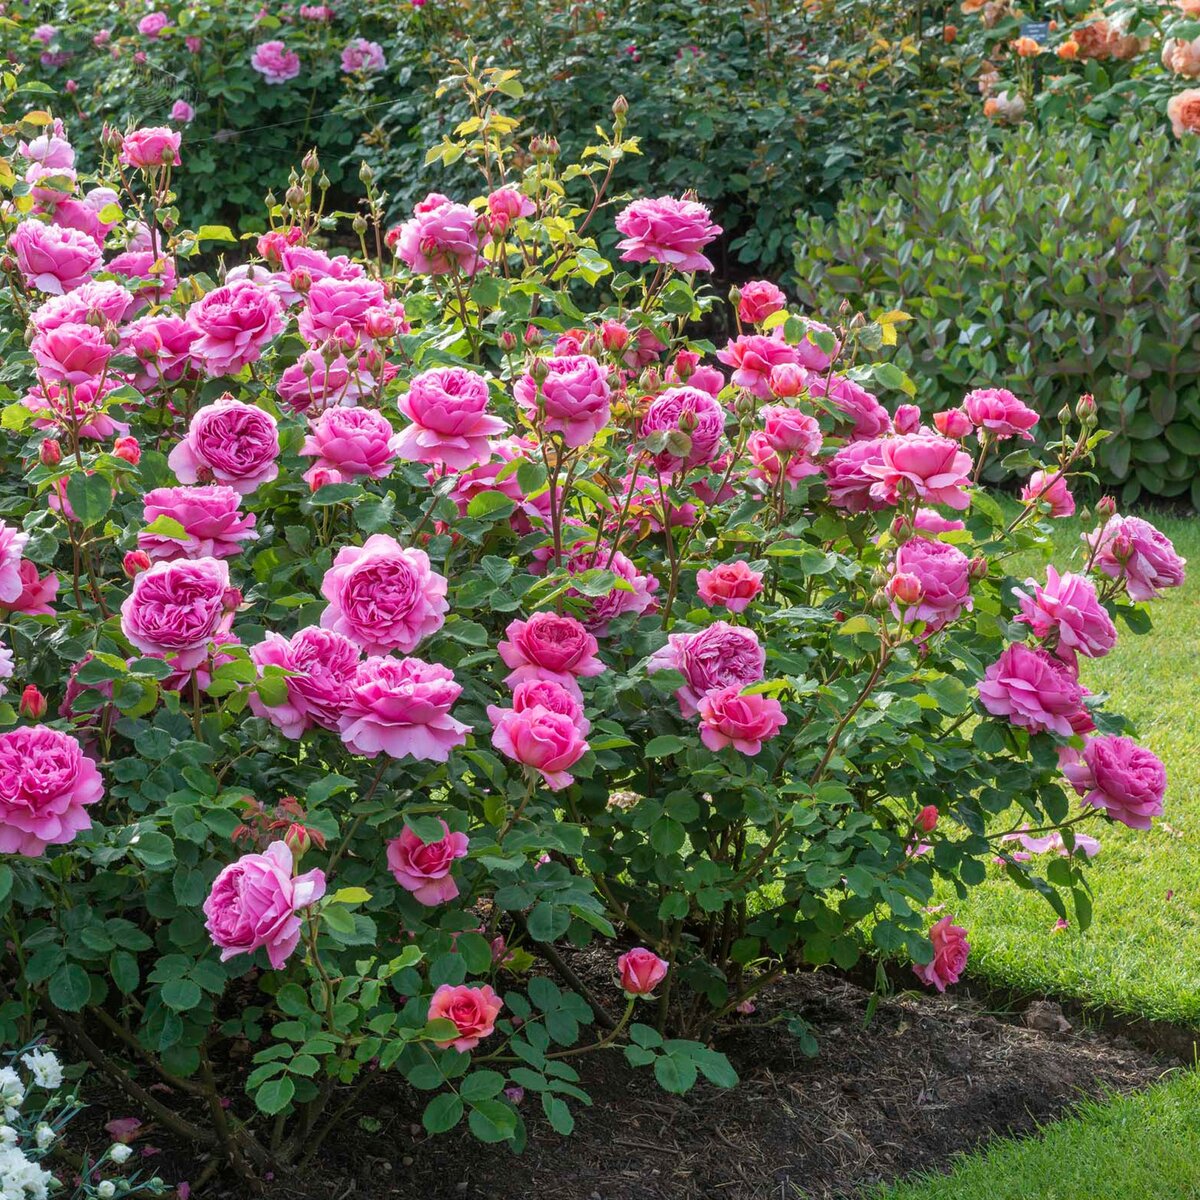 Розы кордеса: особенности, виды и выращивание